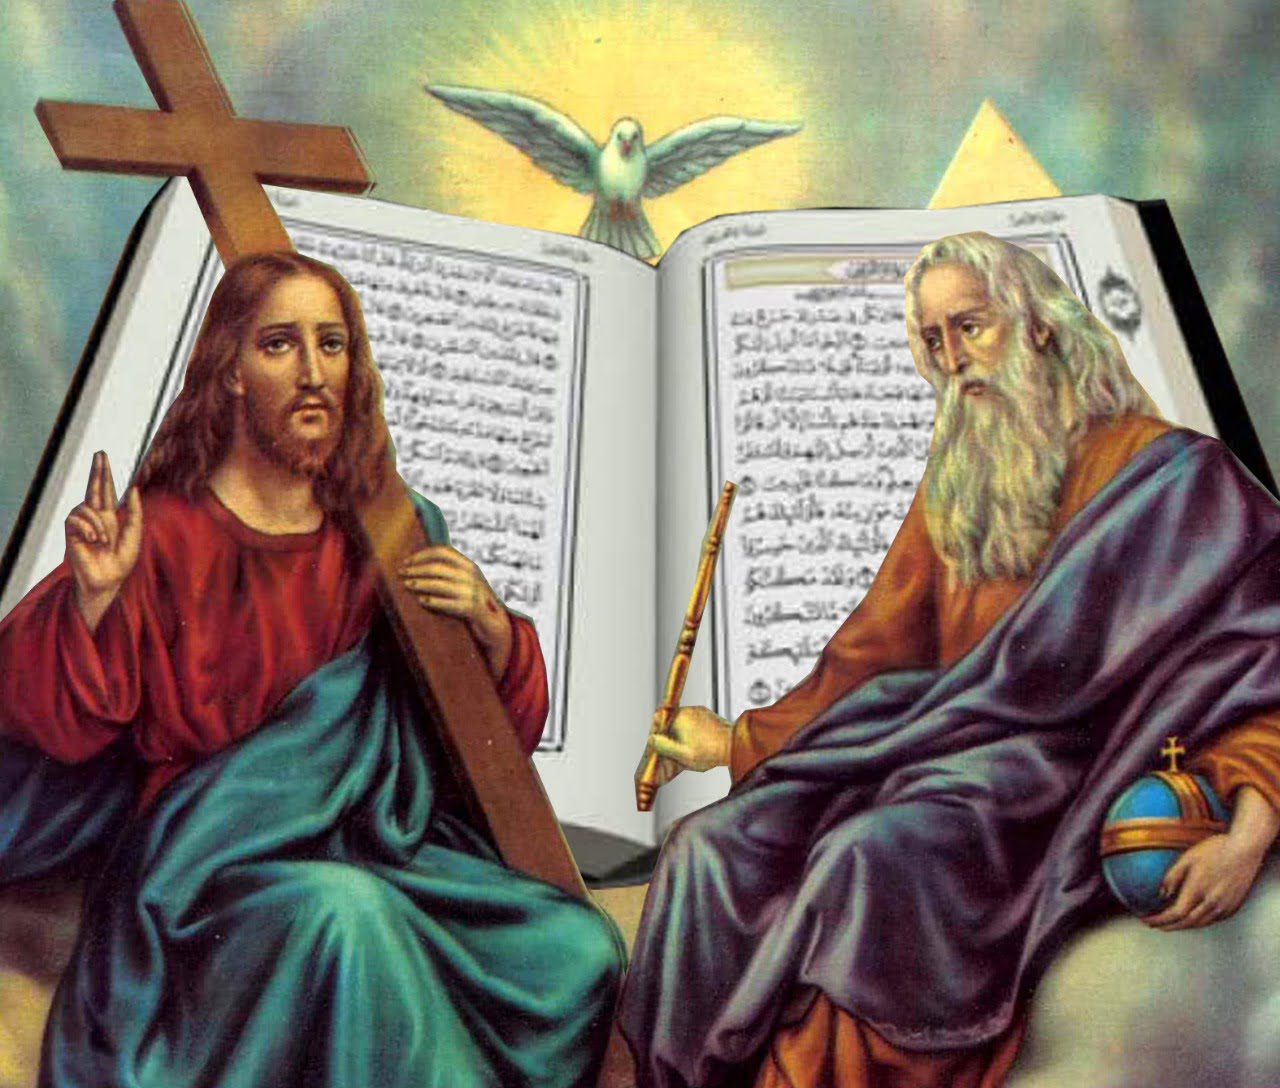  Trinitas atau Triteisme yang Ditolak al-Qur’an? (Kajian Atas Kontroversi Pernyataan UAS)